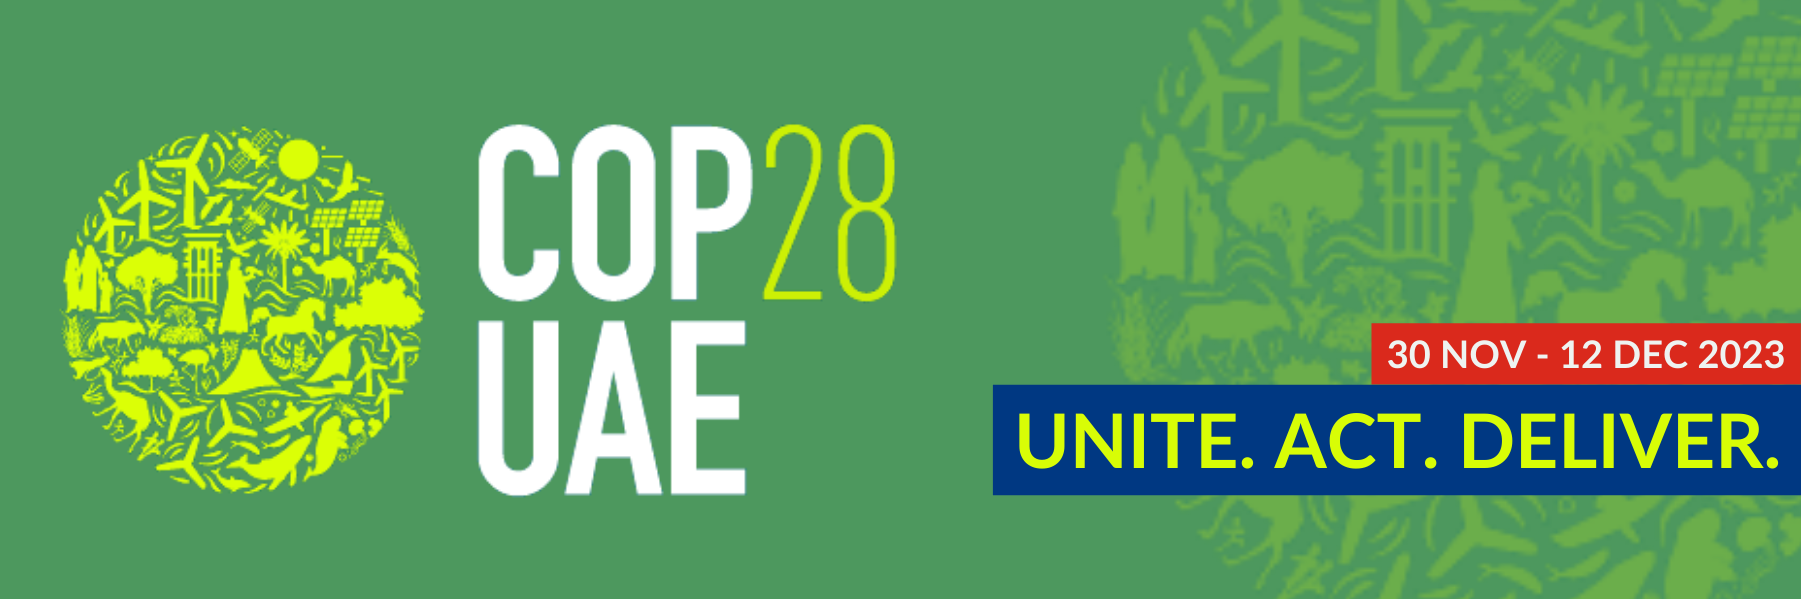 Logo und Botschaft der COP28 in Dubai: Unite. Act. Deliver